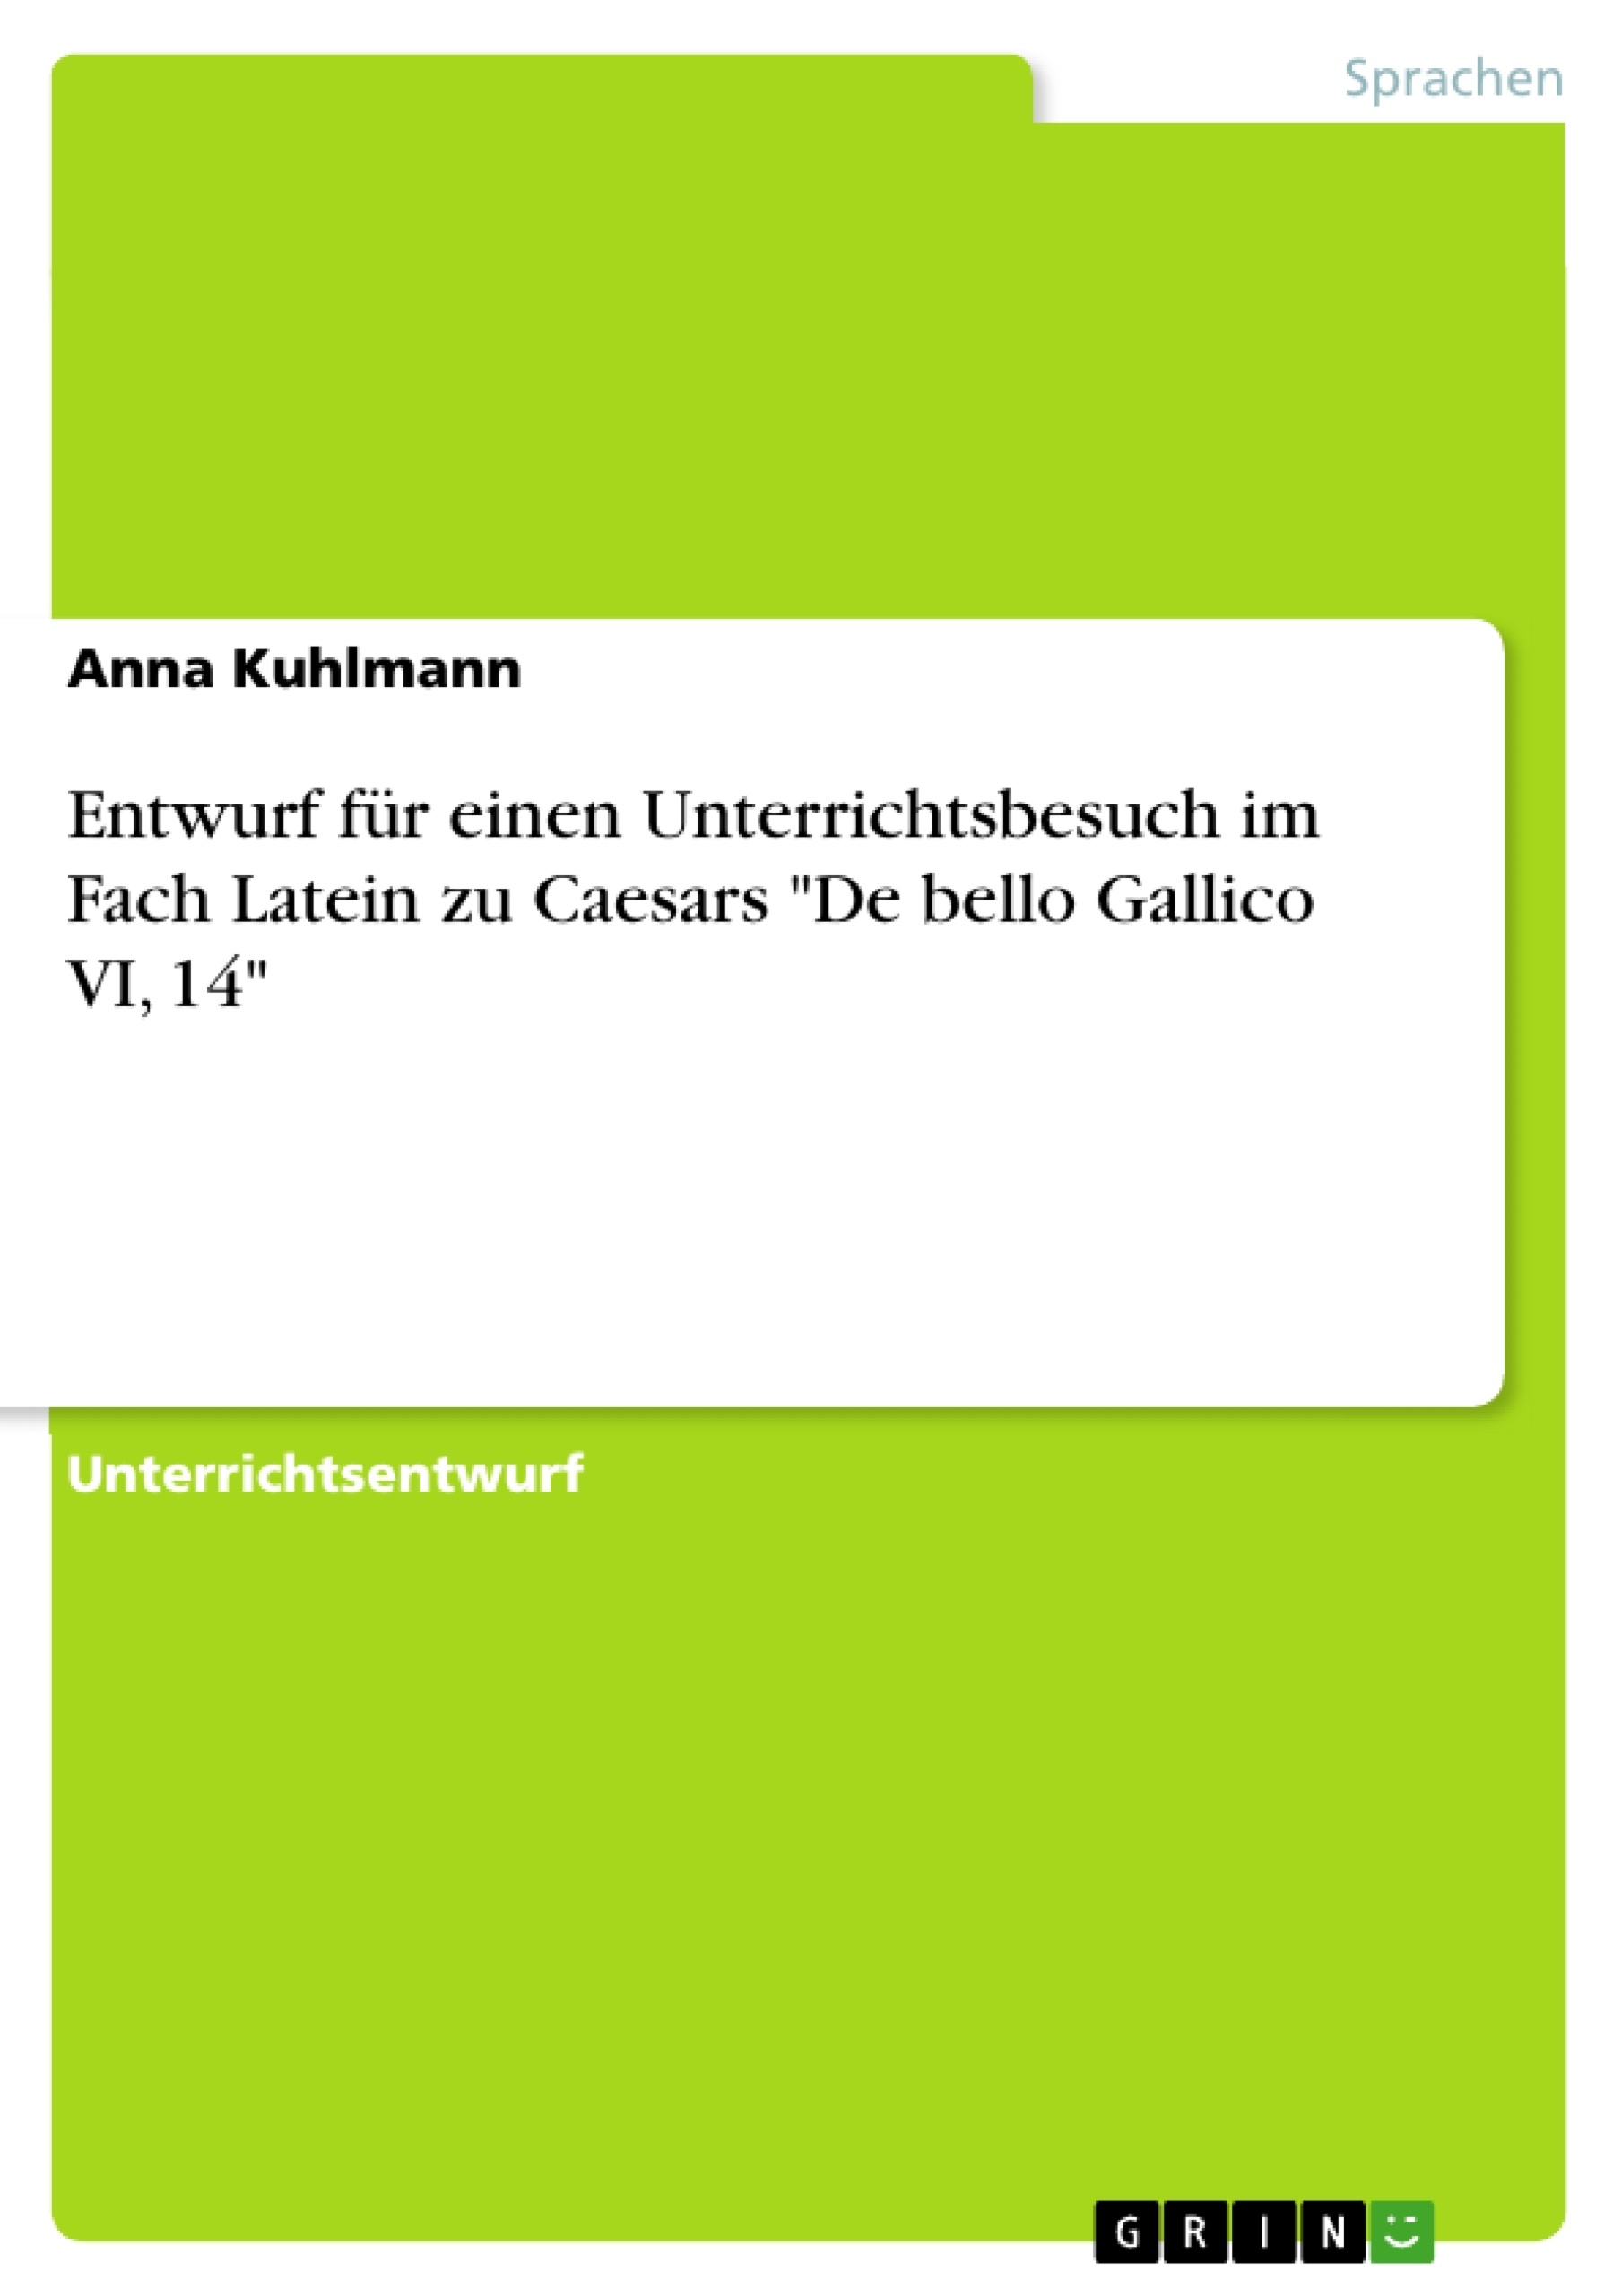 Titel: Entwurf für einen Unterrichtsbesuch im Fach Latein zu Caesars "De bello Gallico VI, 14"